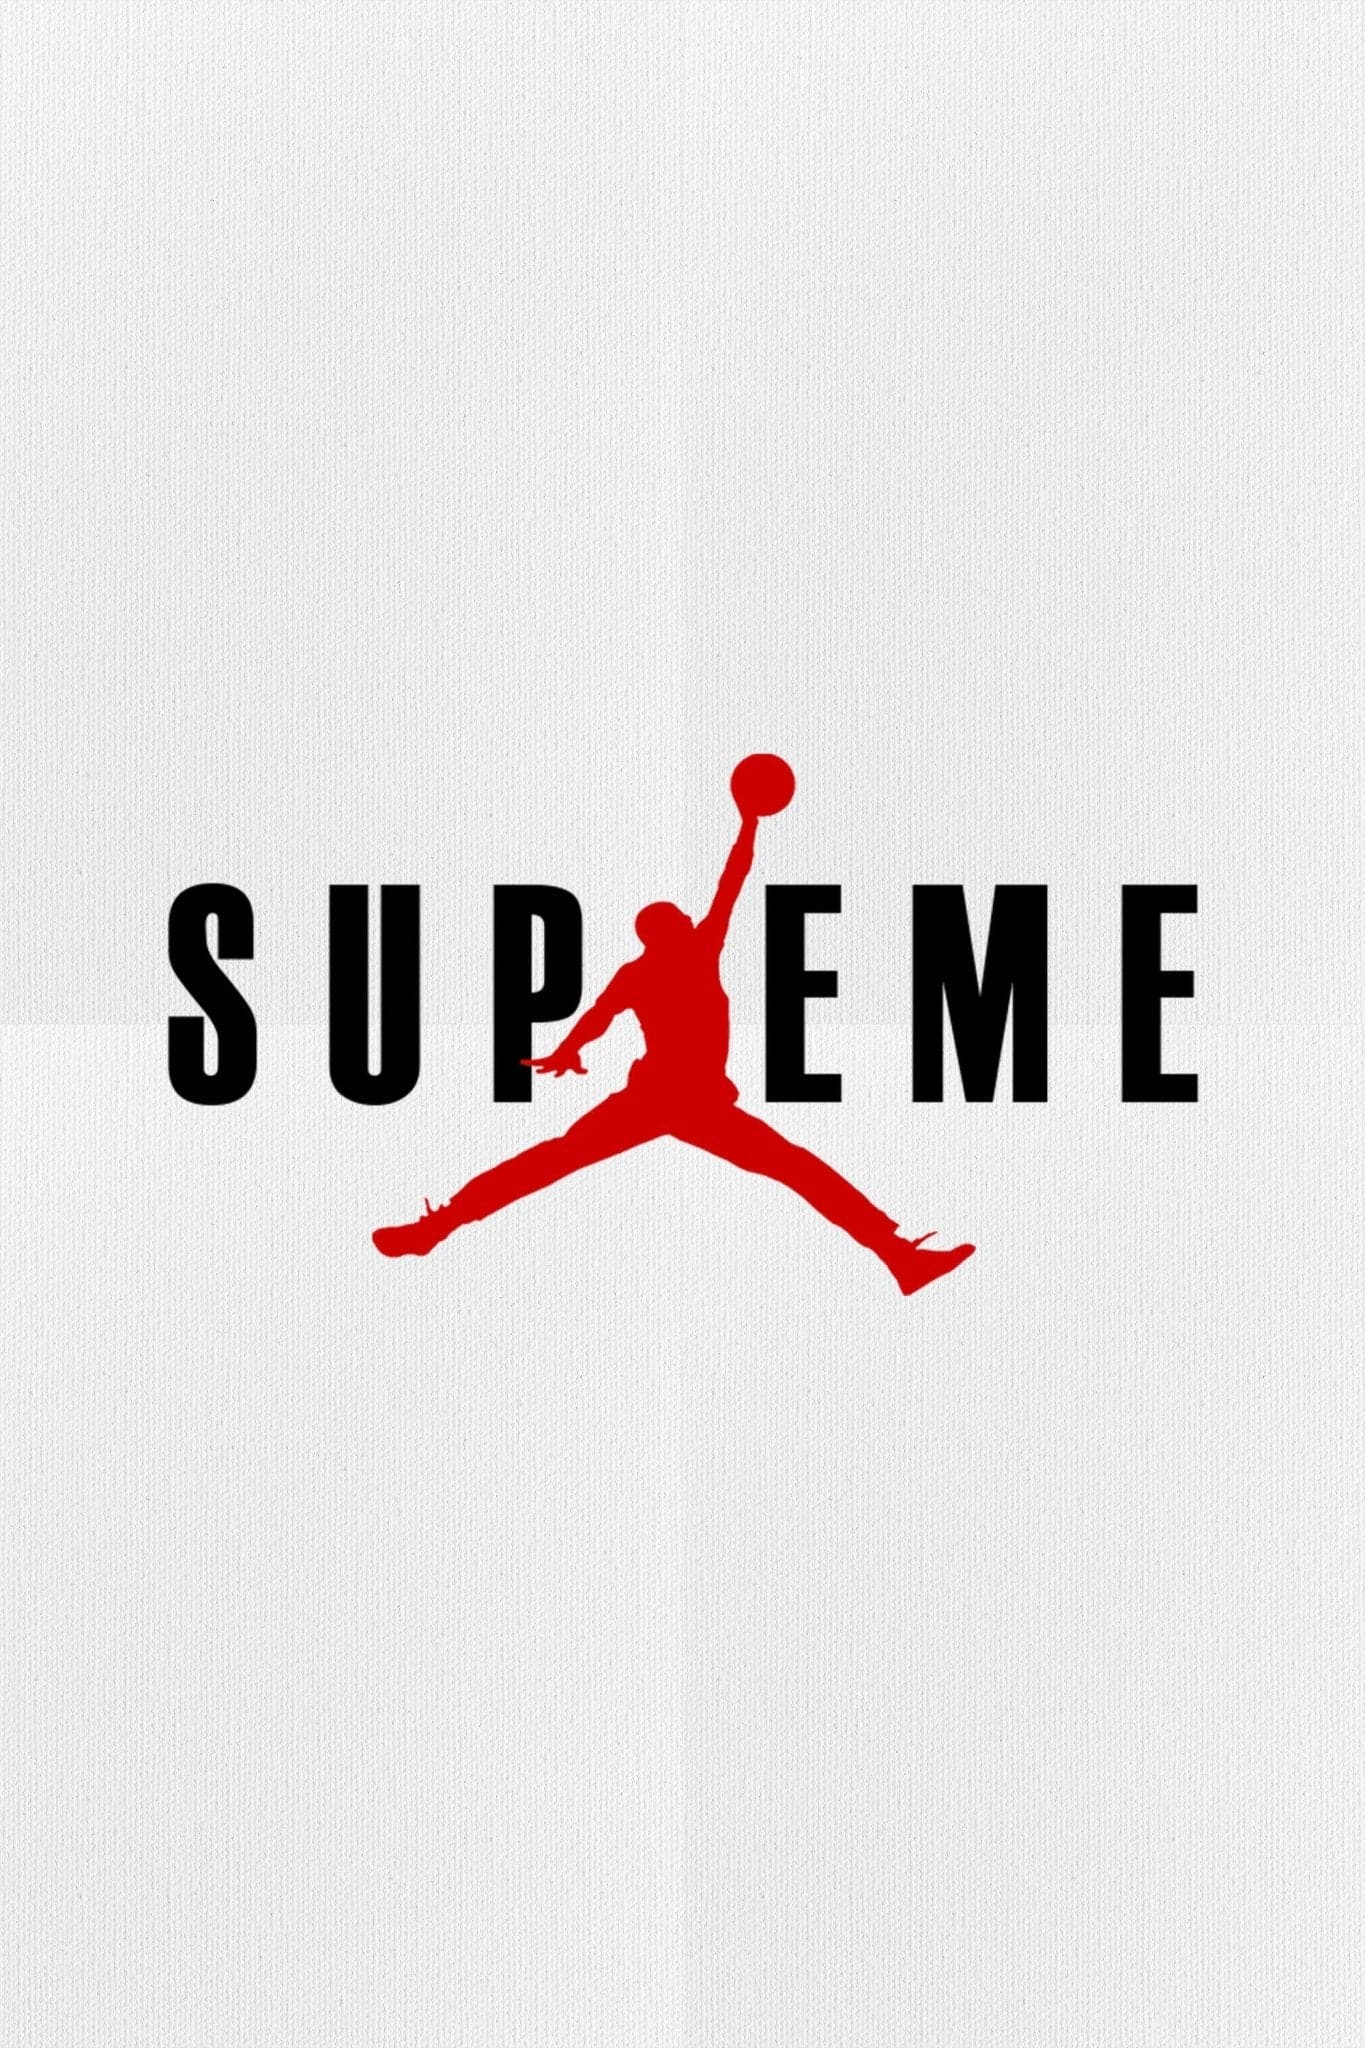 Supreme ‘Air Jordan’ Poster